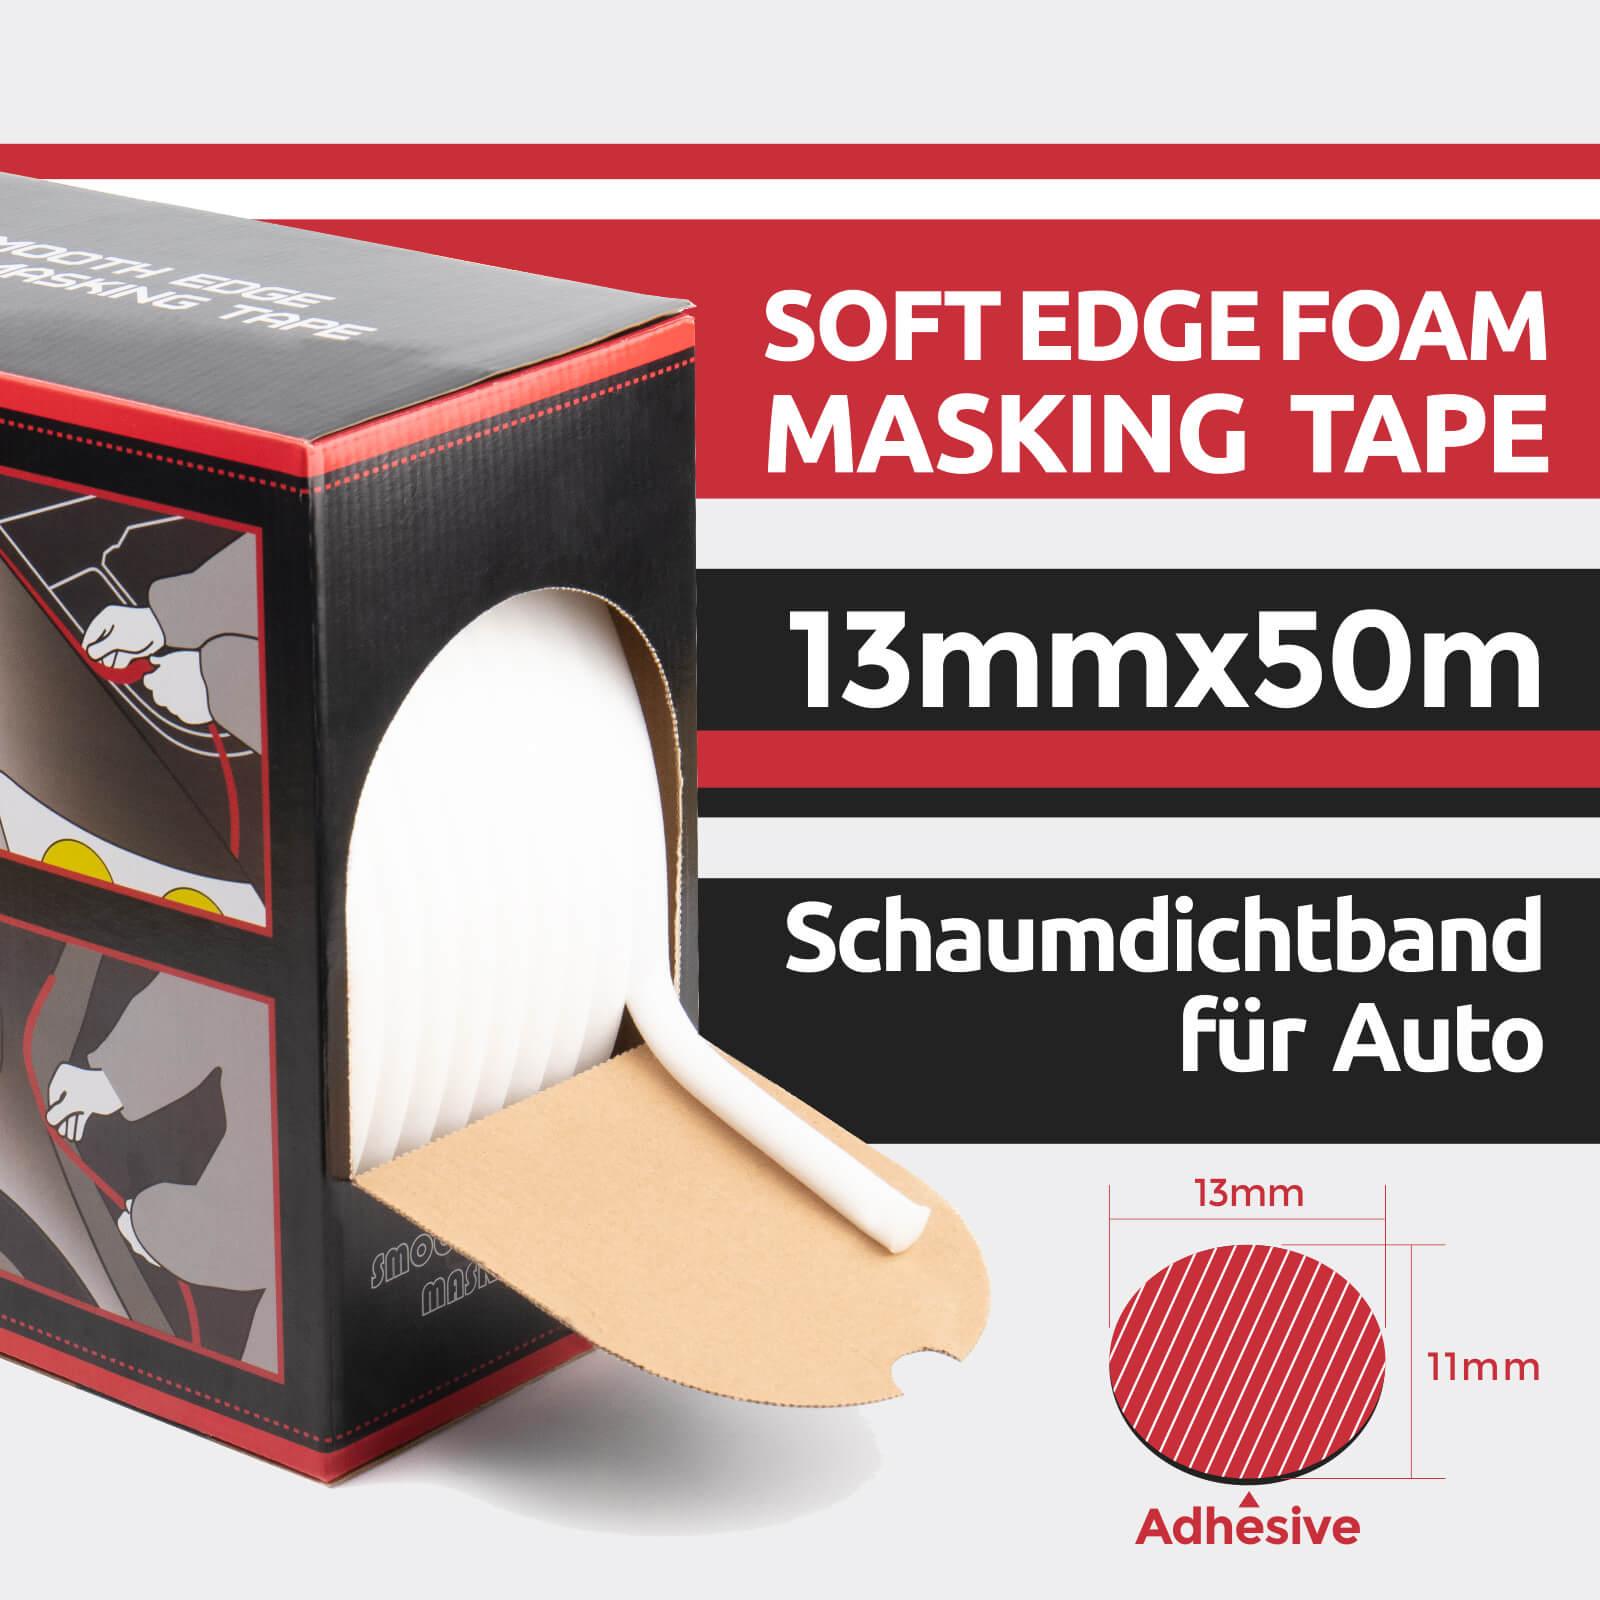 Soft Edge Foam Masking Tape Schaumdichtband 13mmx50m 